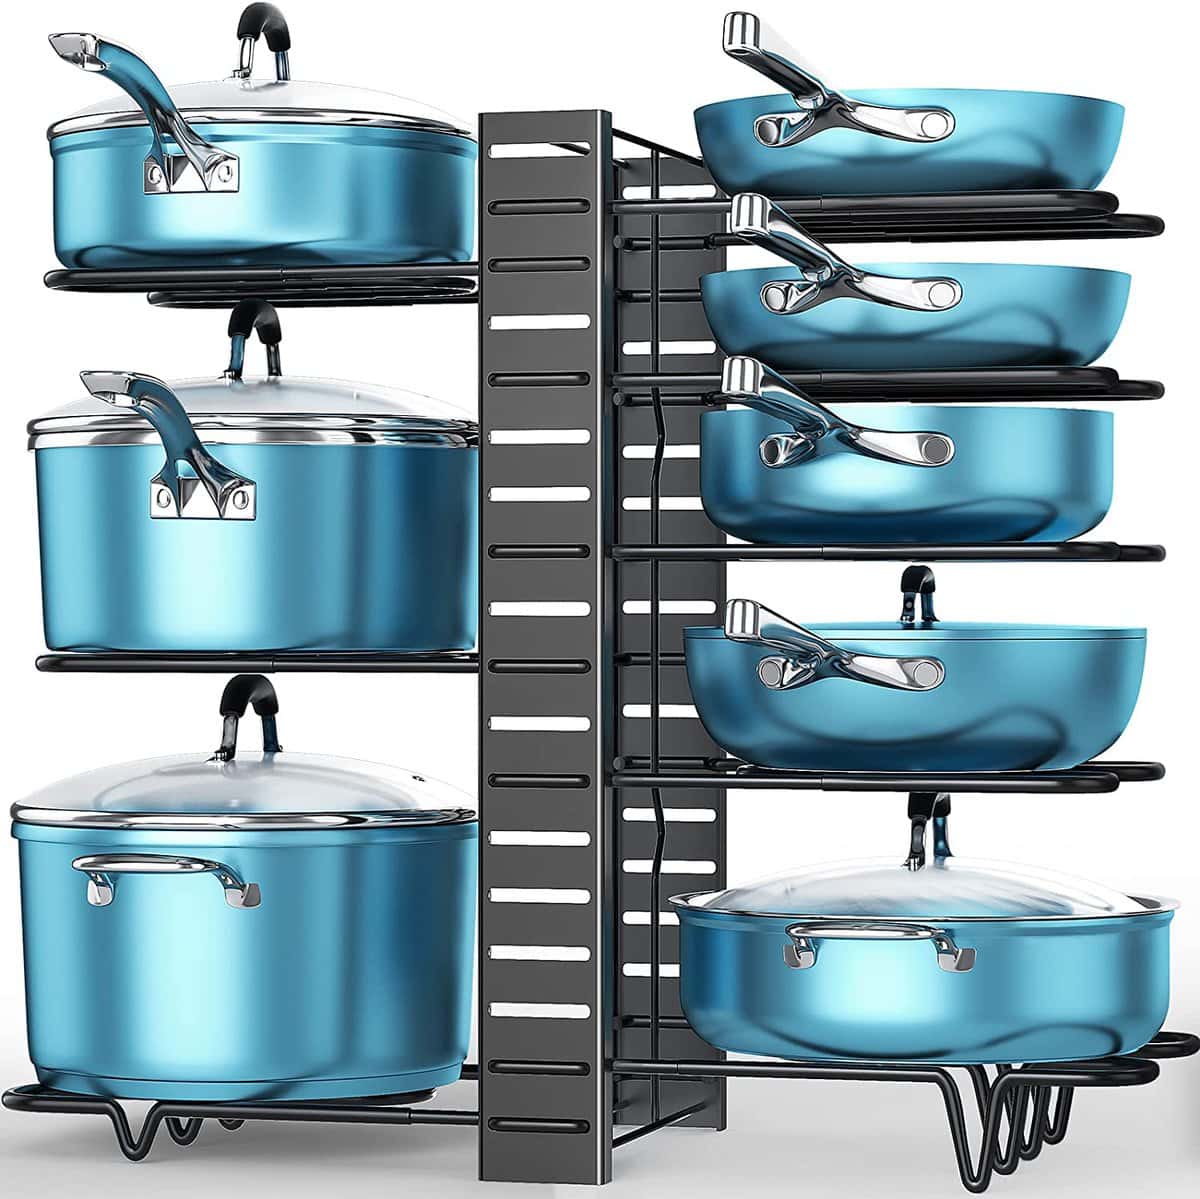 厨房组织理念——一个可以垂直存放锅碗瓢盆的储物架。